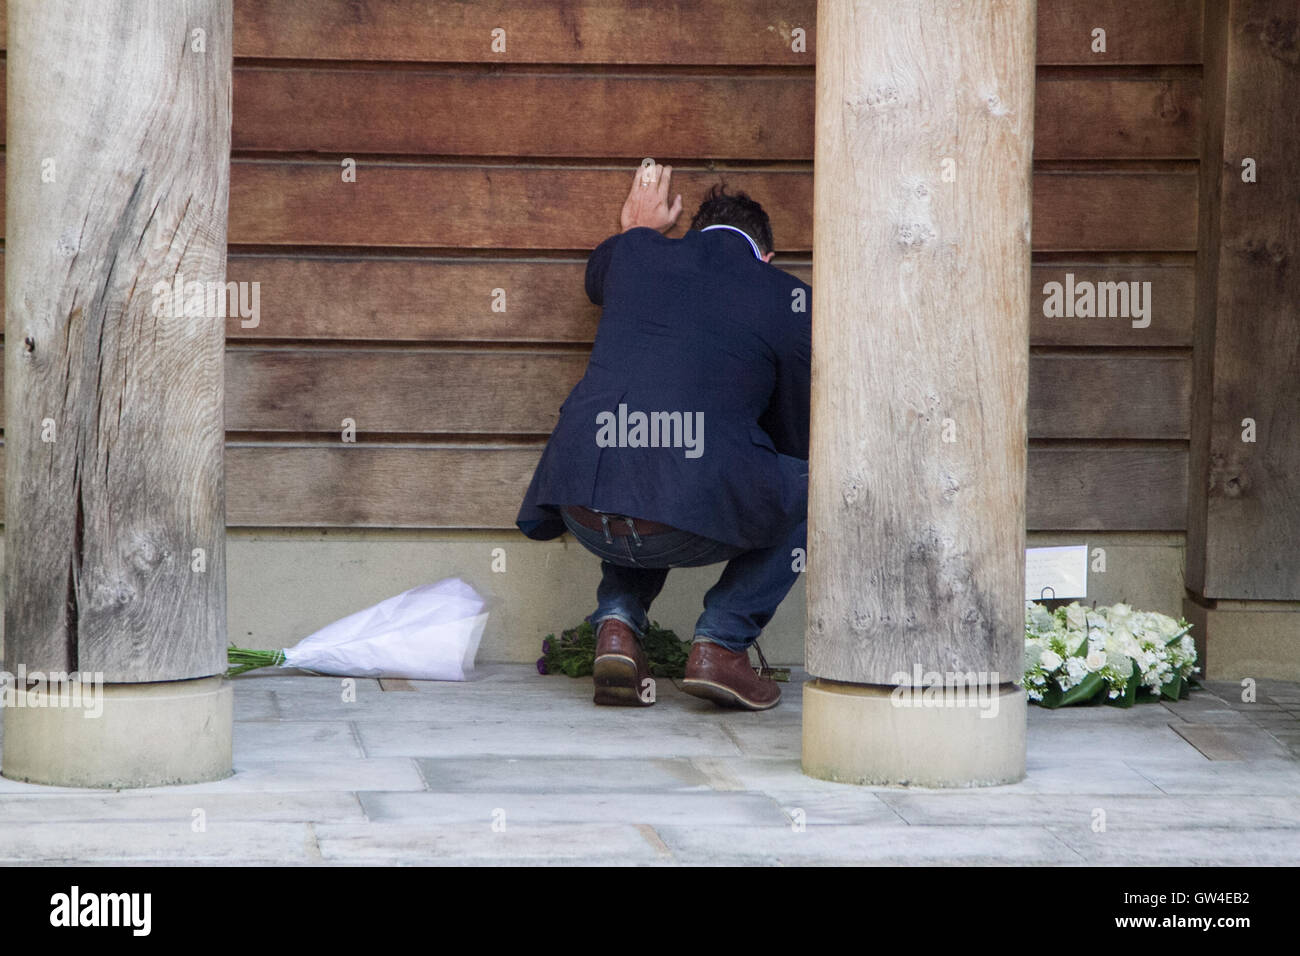 Londres, Royaume-Uni. Sep 11, 2016. Un homme met des fleurs au monument à Londres les britanniques victimes des attentats du 11 septembre à New York et Washington DC Crédit : amer ghazzal/Alamy Live News Banque D'Images